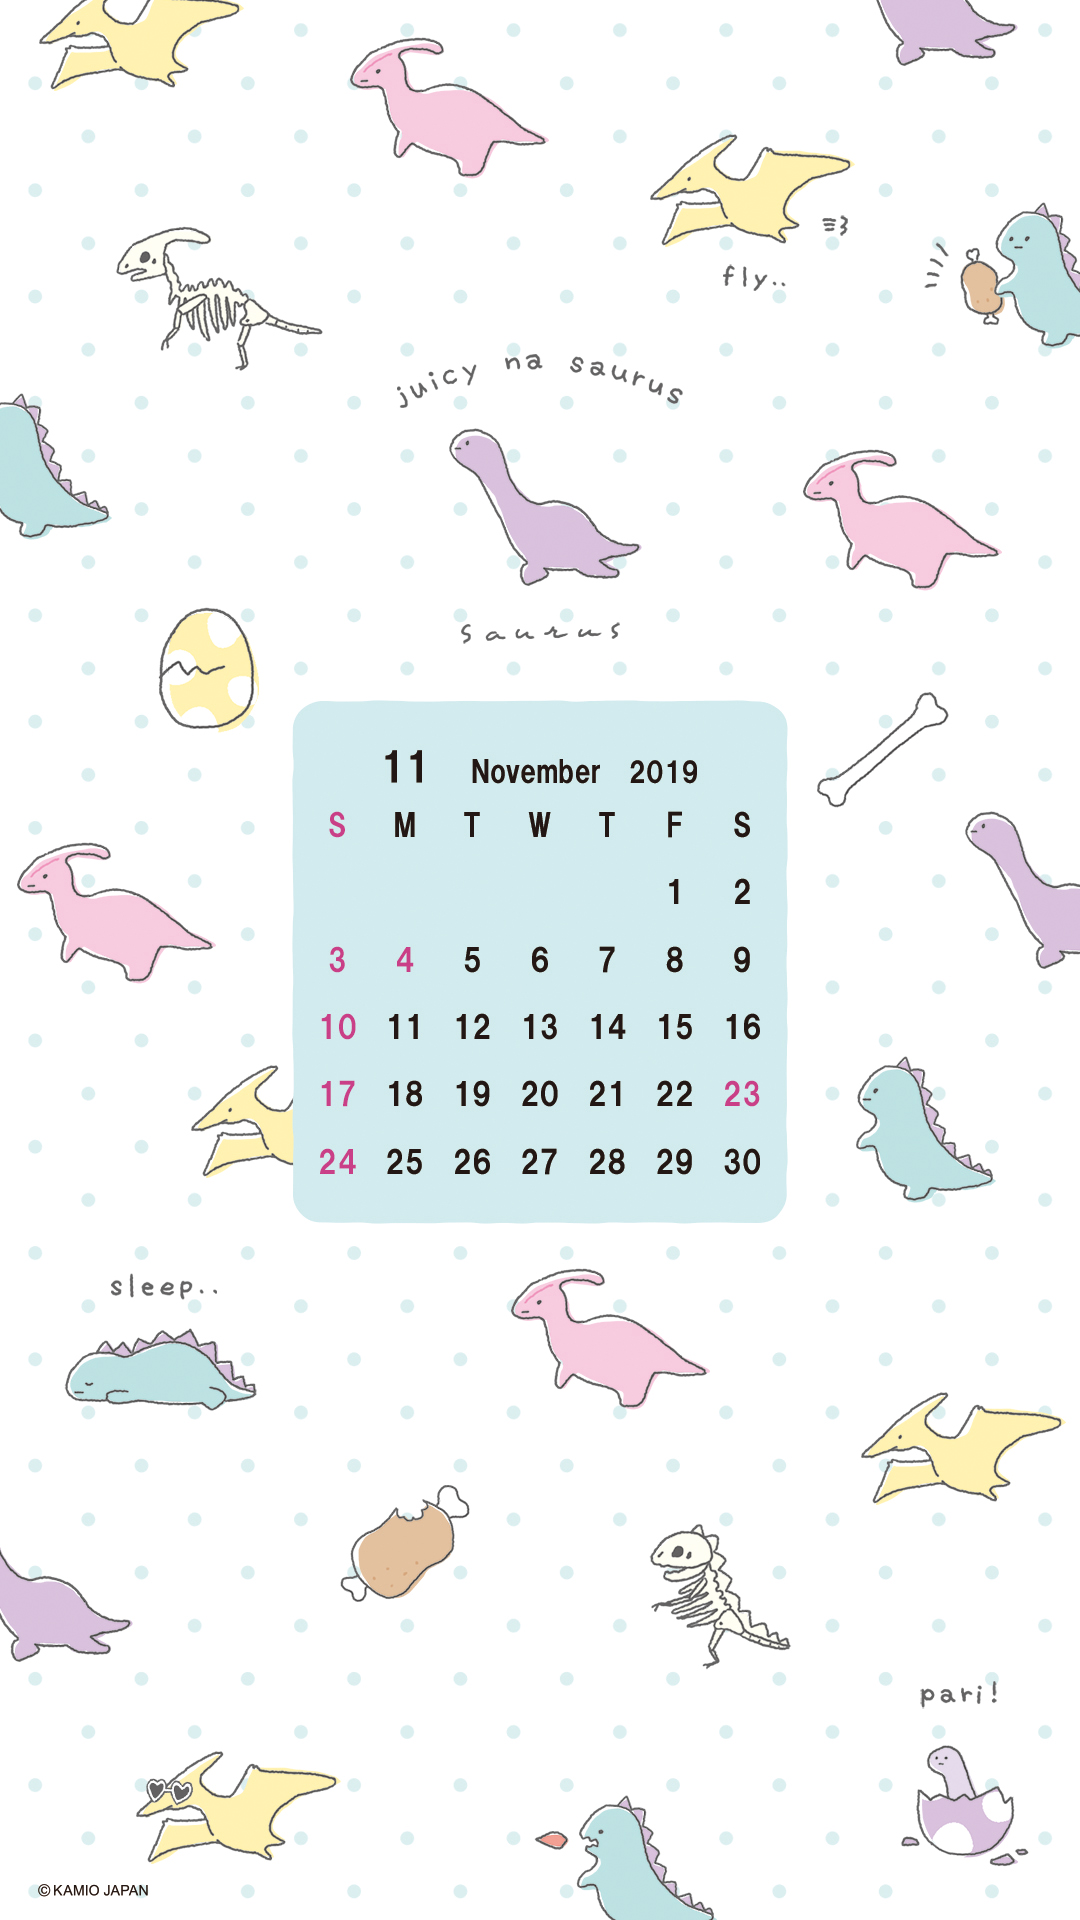 11月壁紙カレンダー配布 ニュース 株式会社カミオジャパン ファンシーグッズの企画 デザイン 製造 販売